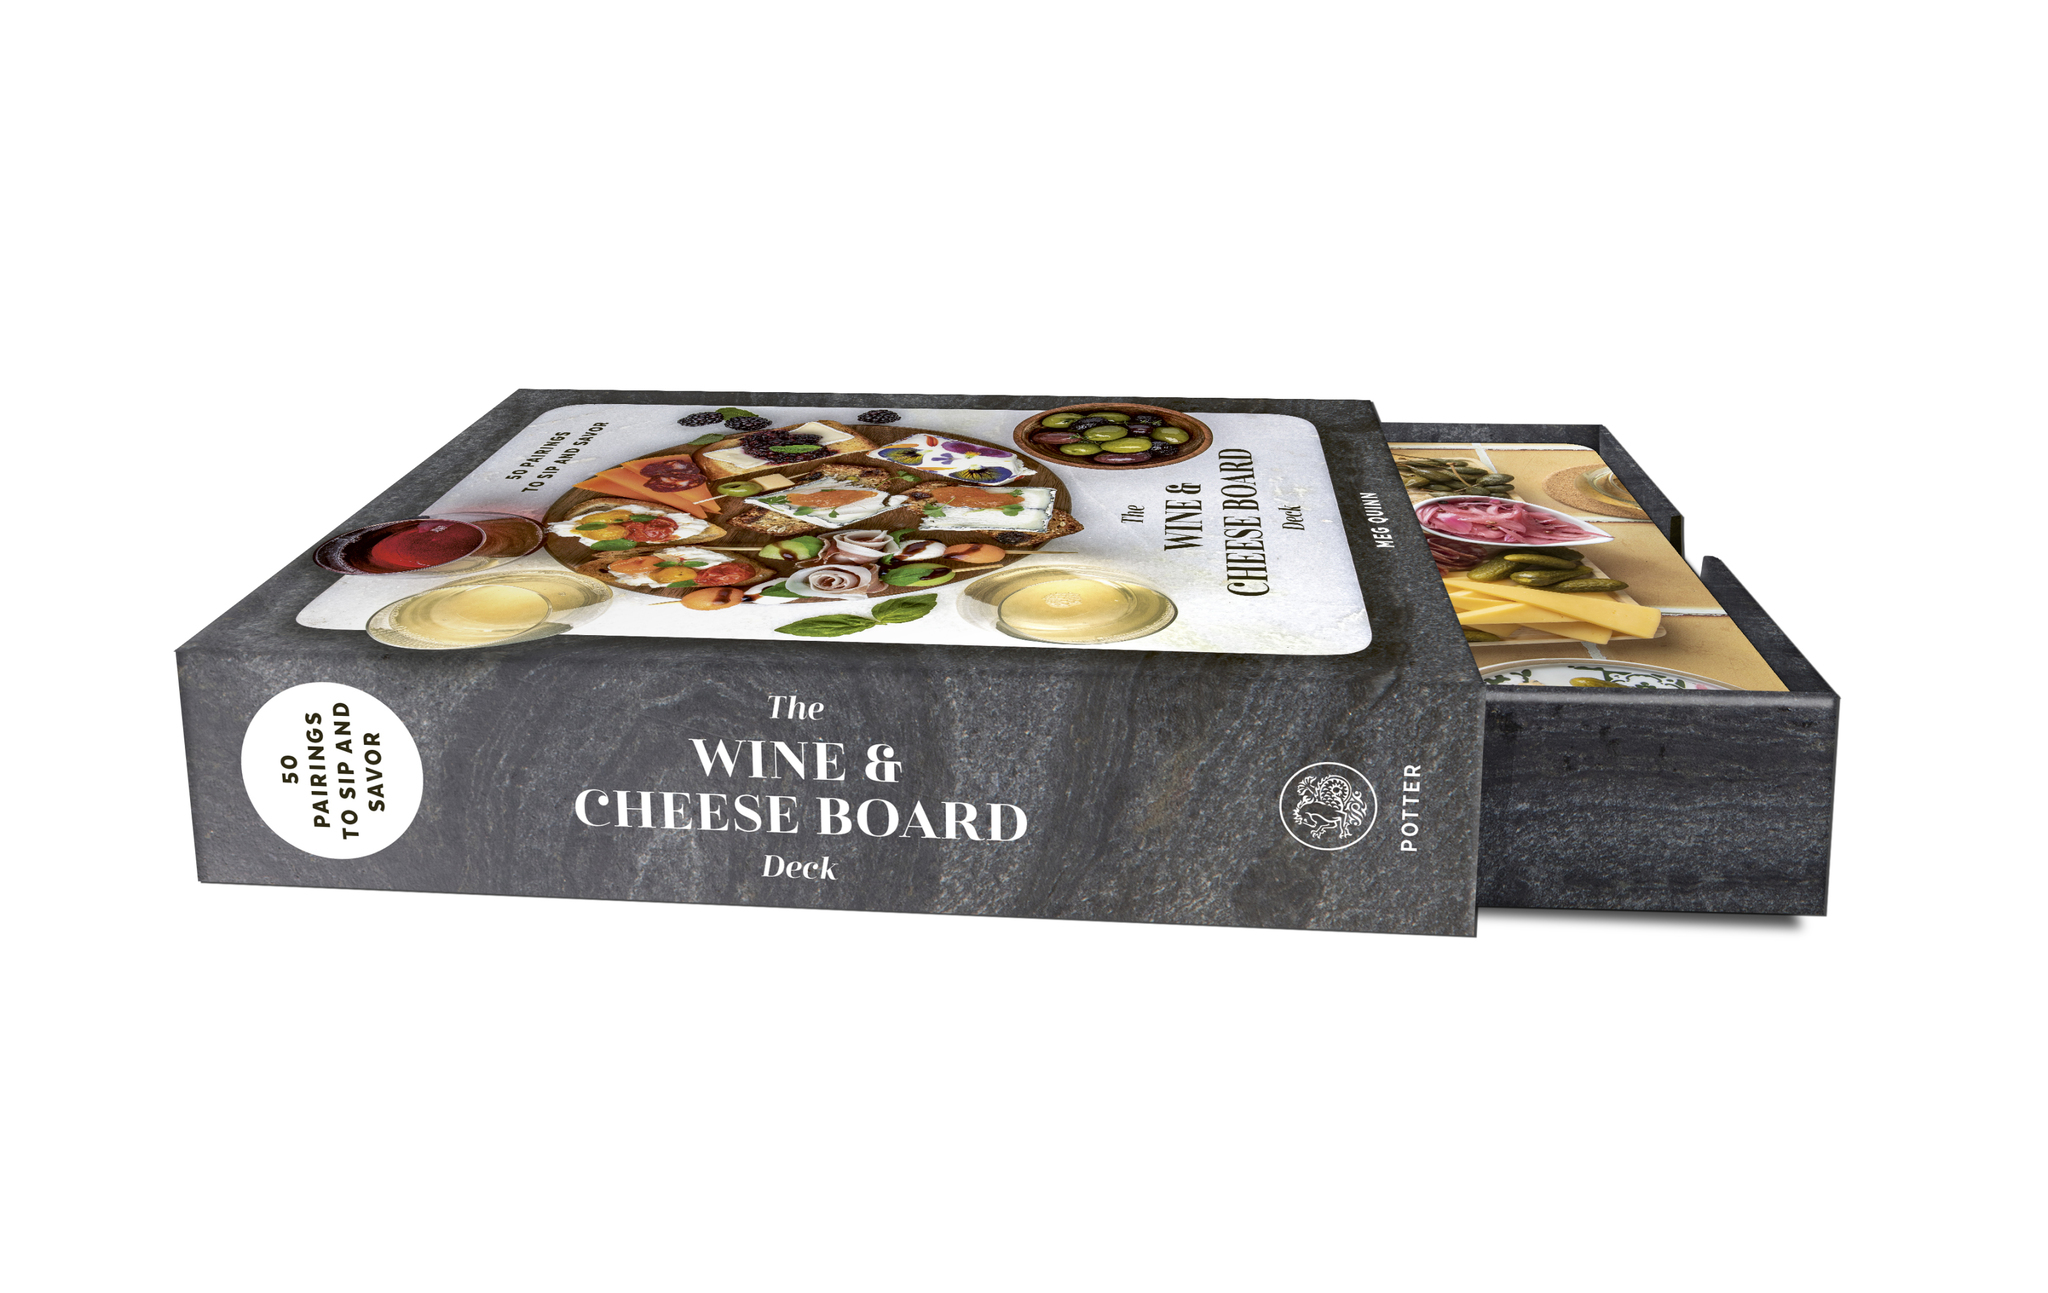 The Cheese Board Deck by Meg Quinn & Shana Smith